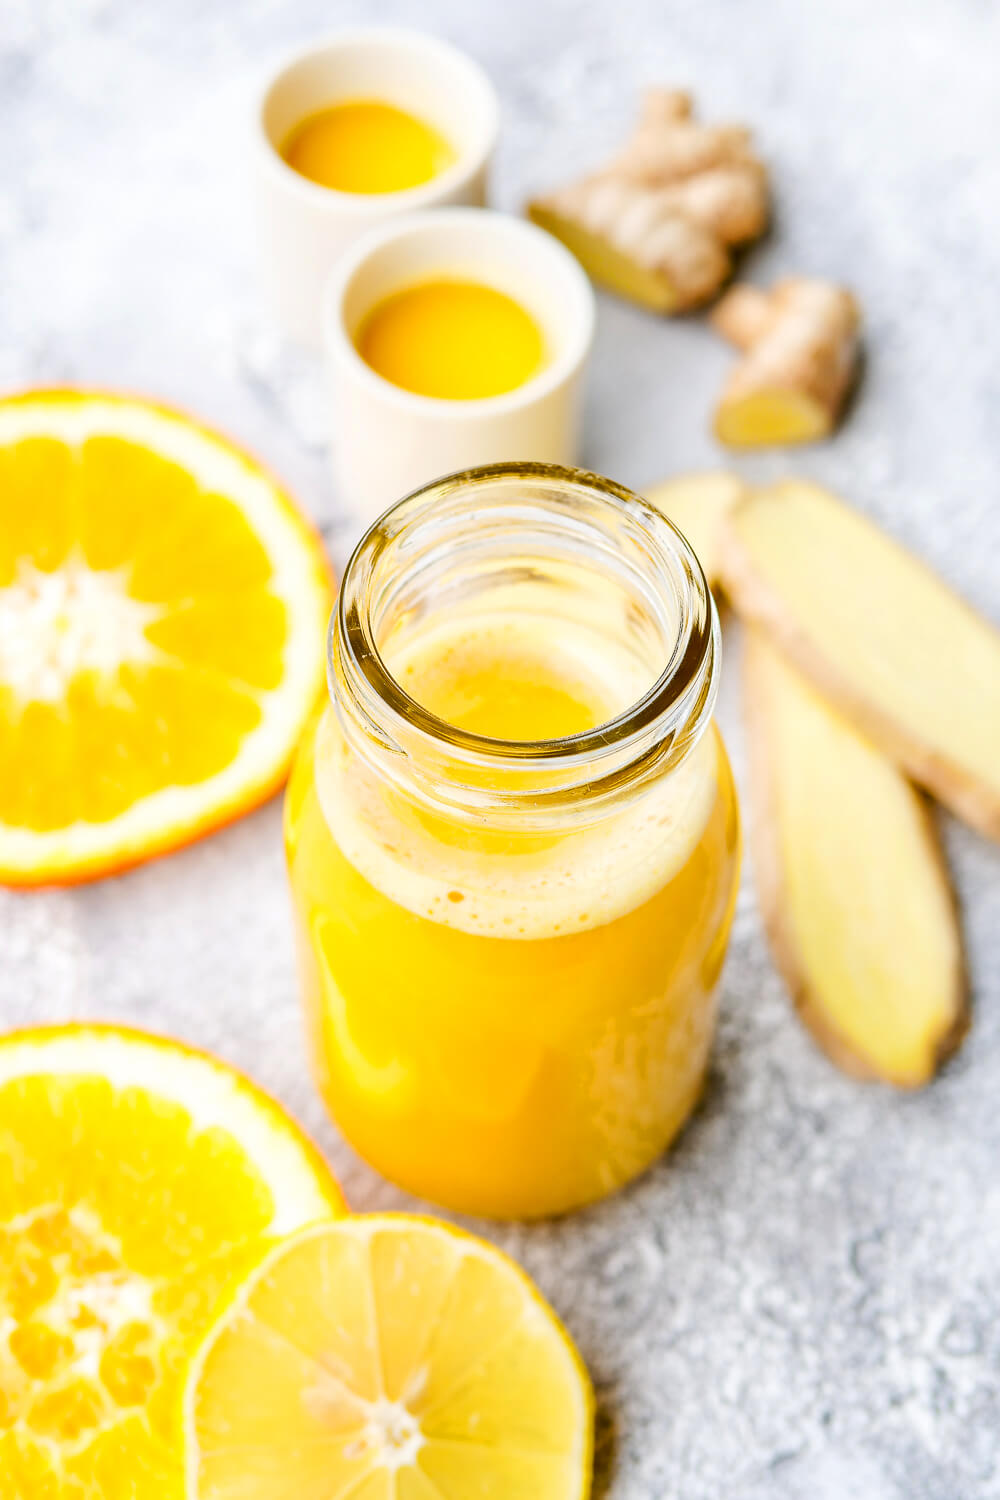 Ingwer-Shot mit Orangen, Äpfeln und Zitrone - eins meiner beliebtesten Rezepte 2019